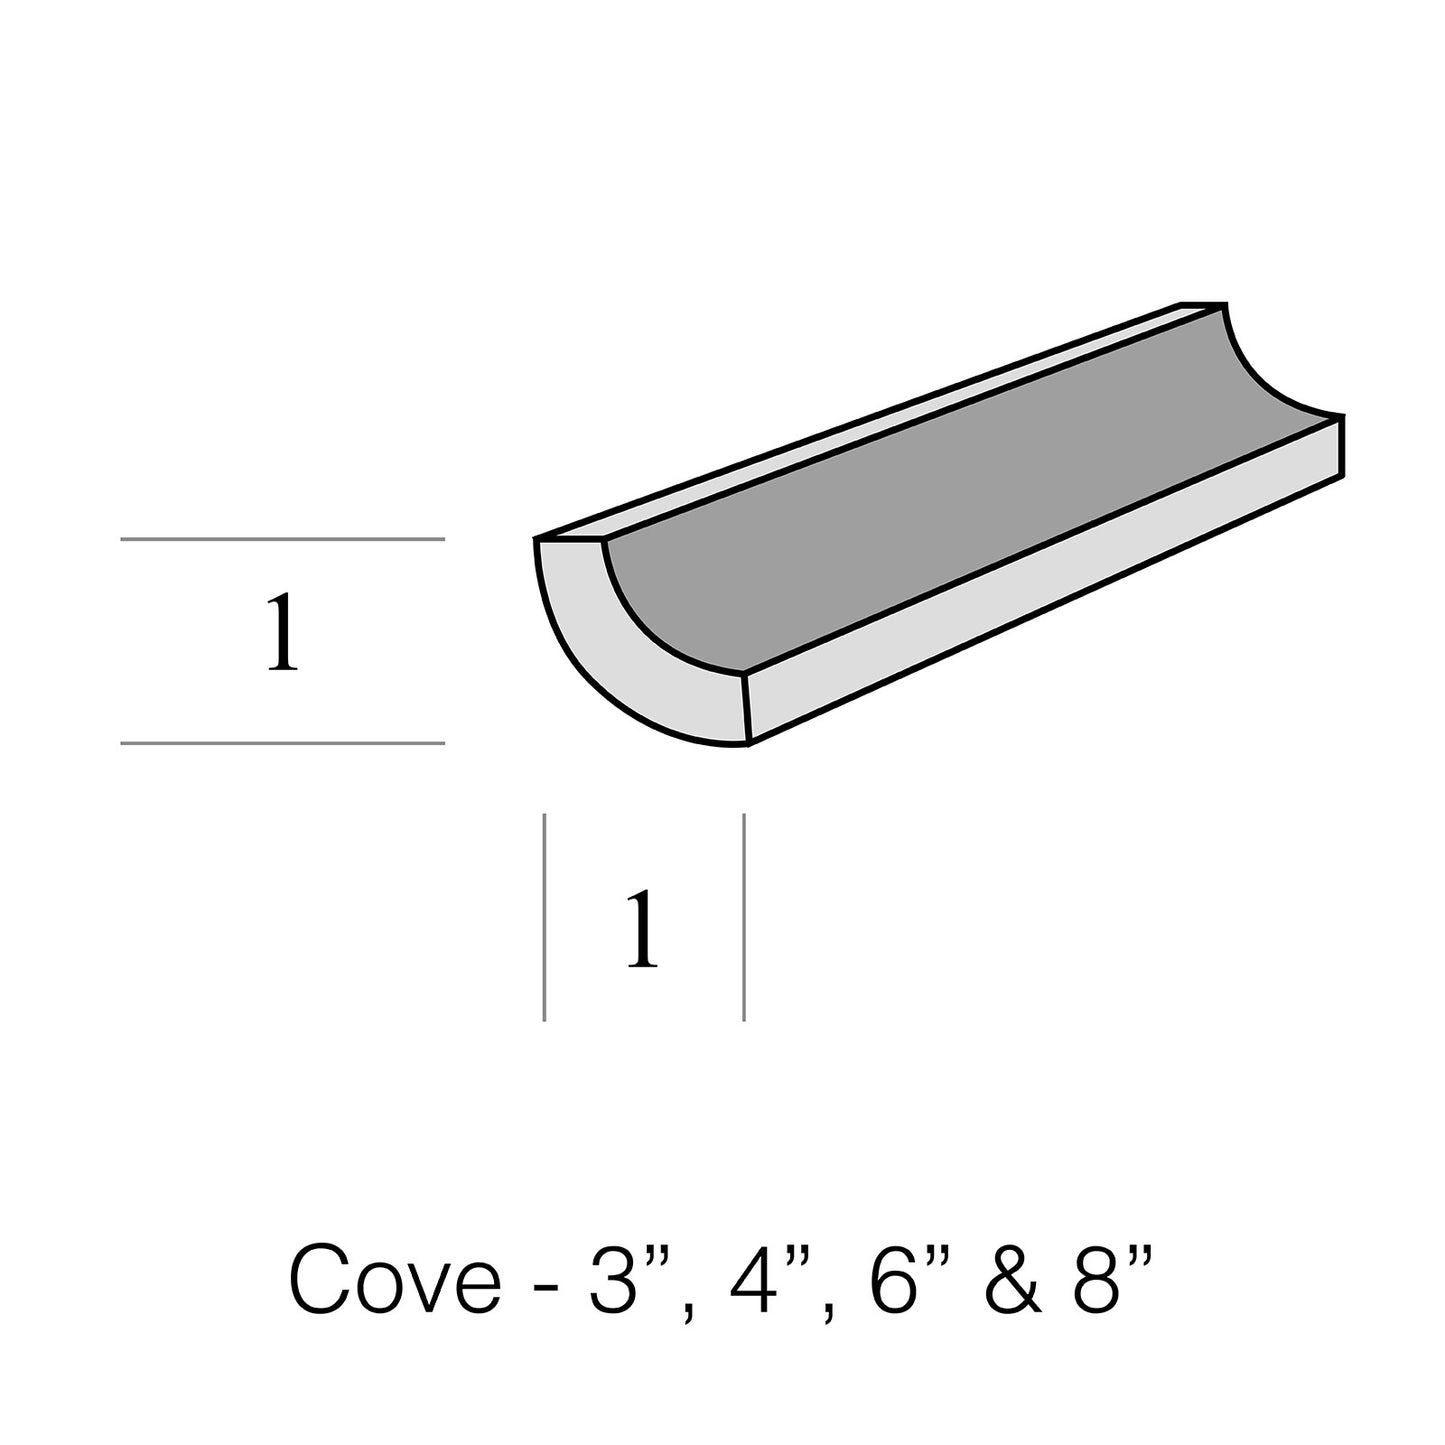 Cove 1" r, 4"